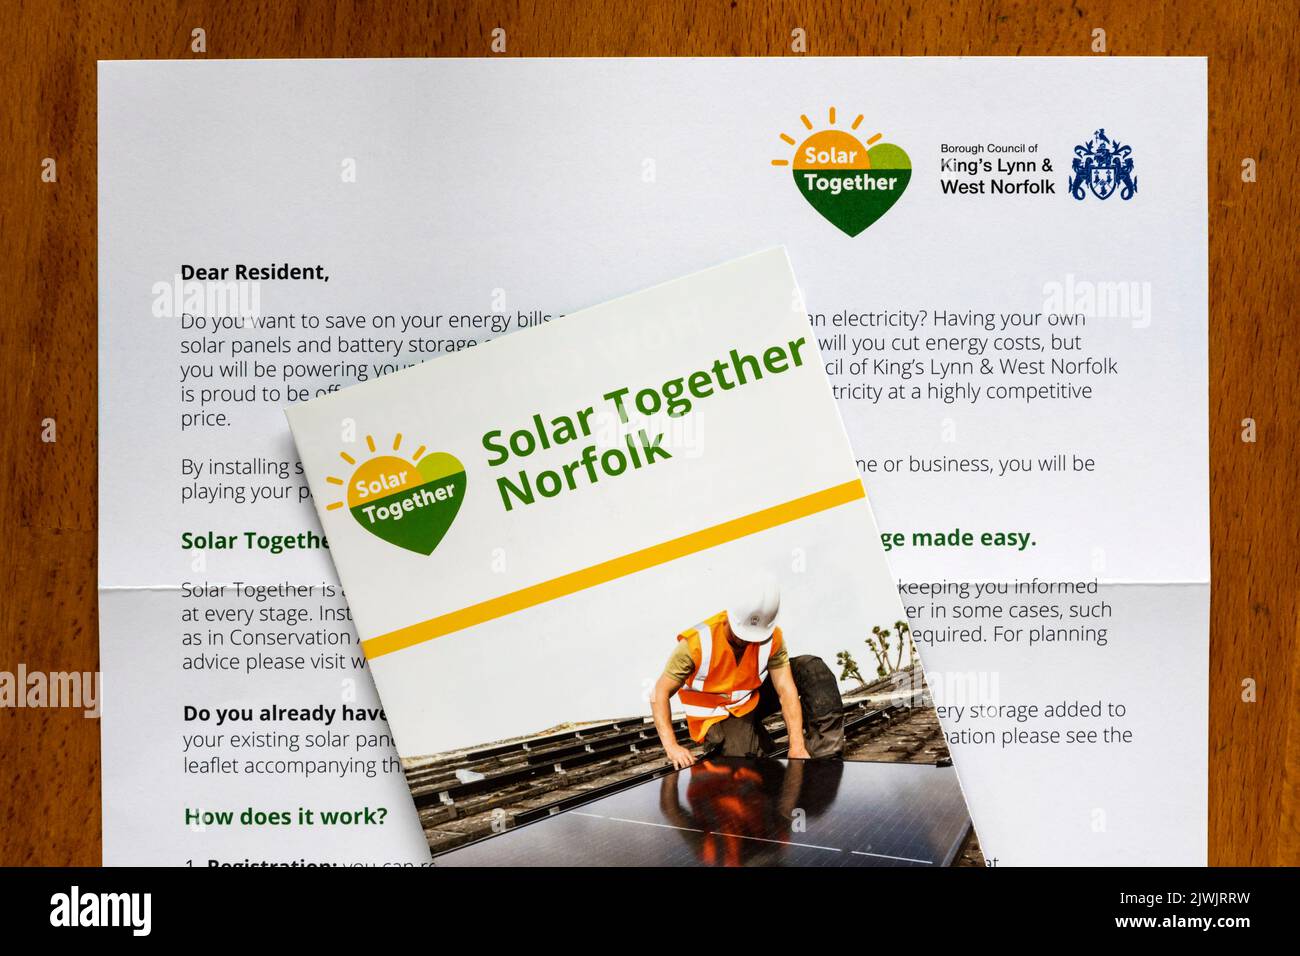 Una carta y folleto para residentes que promueven Solar Together Norfolk, una iniciativa para instalar células fotovoltaicas en casas. Foto de stock